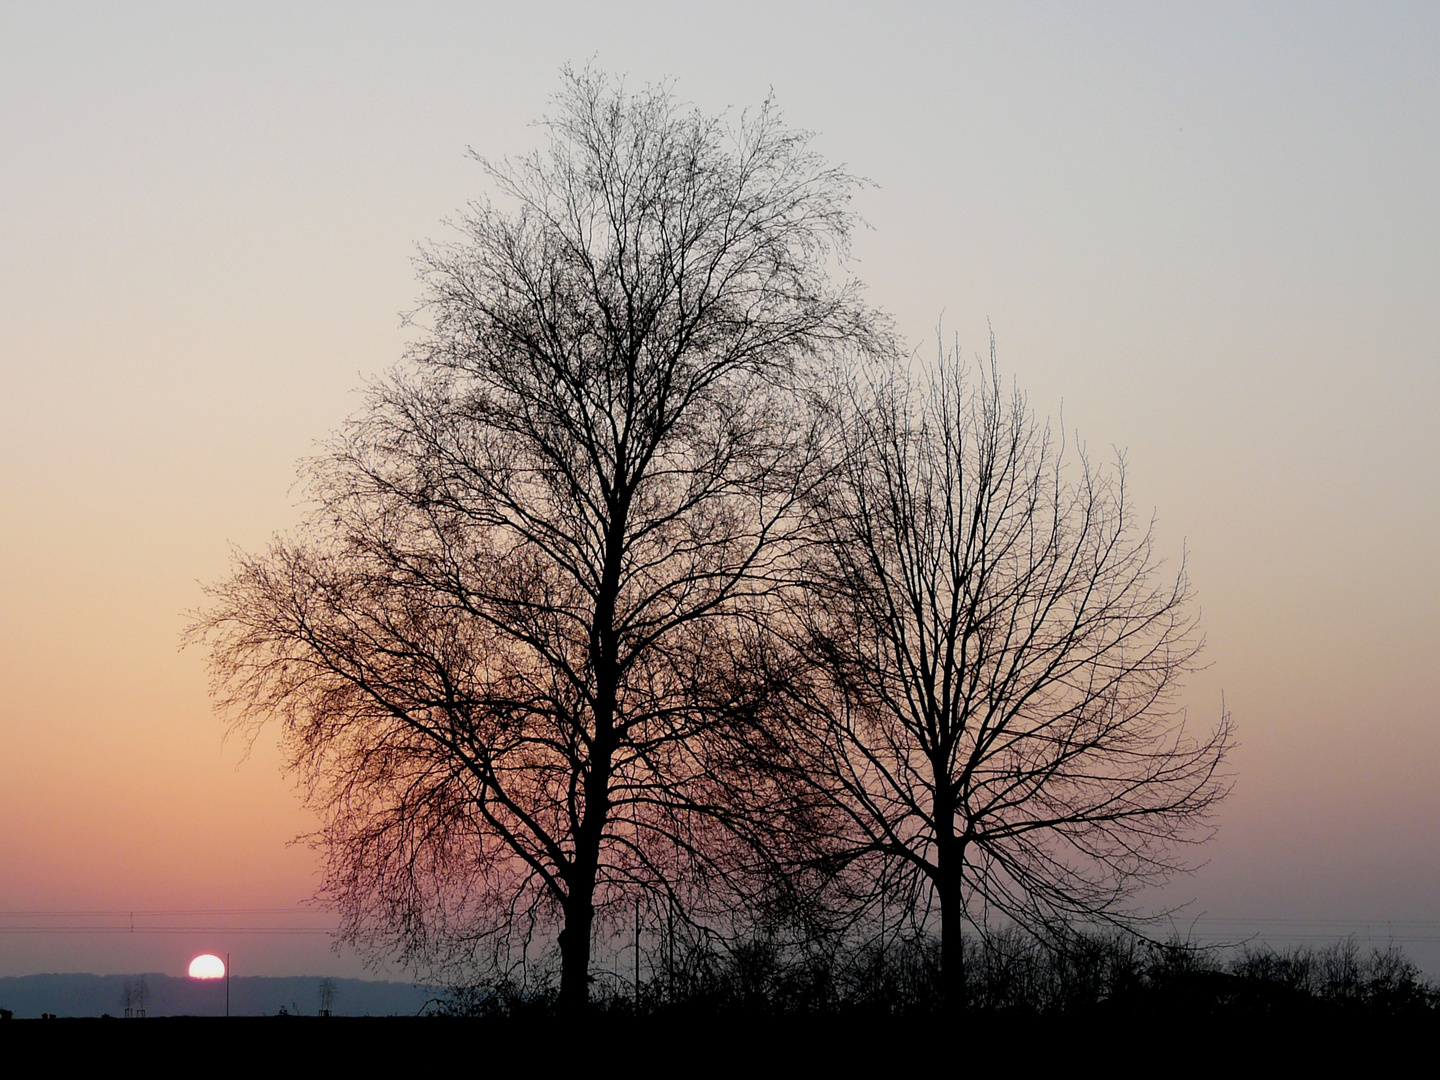 die kahlen Bäume im Licht des Sonnenuntergangs